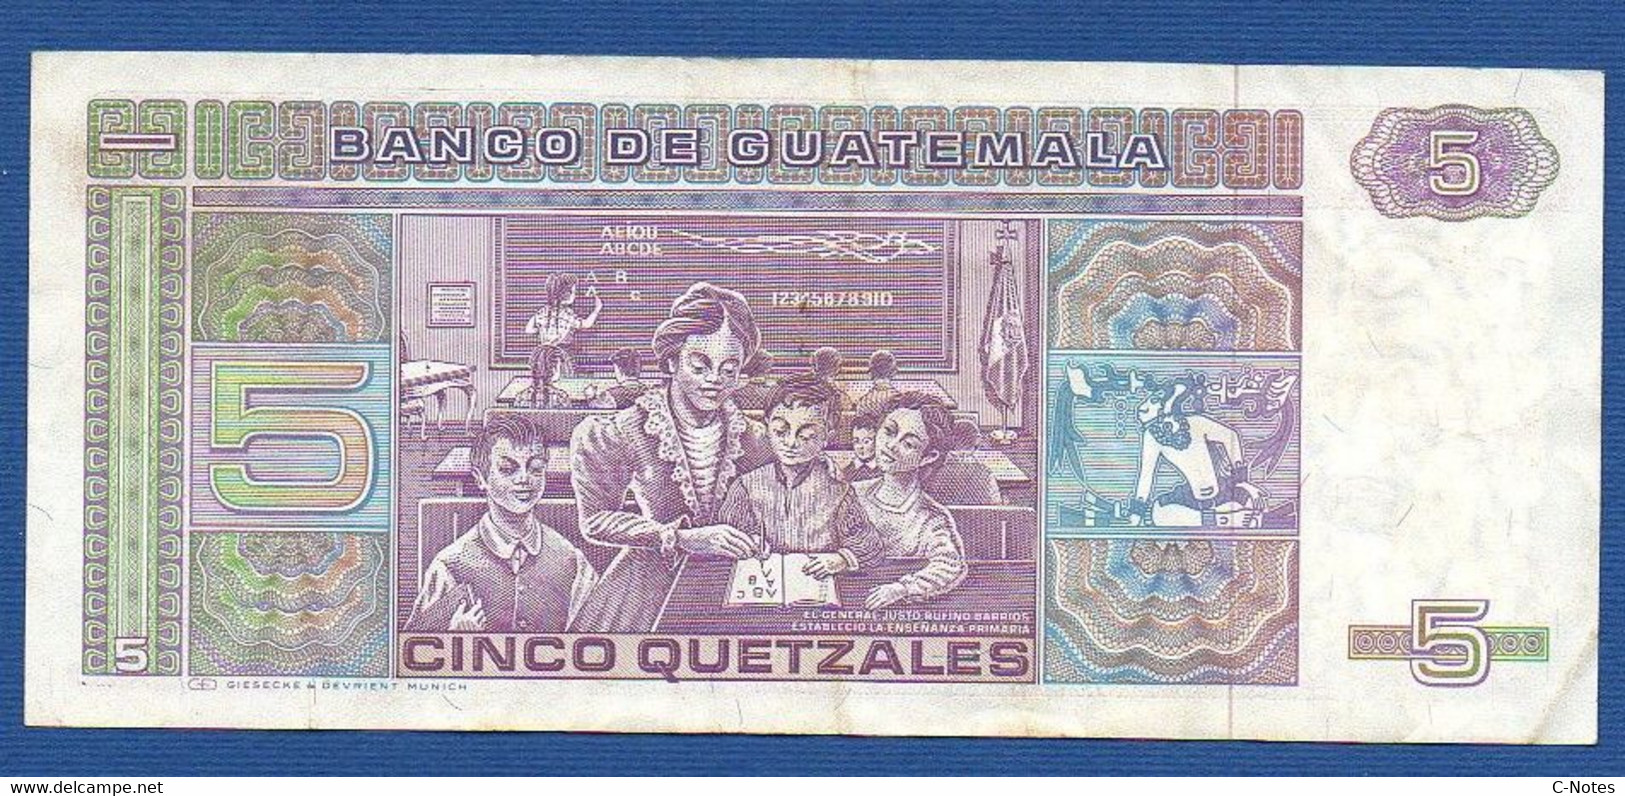 GUATEMALA - P. 67 – 5 Quetzales 06.01.1988 Circulated, Serie D1573083D, Printer Giesecke & Devrient, Munich - Guatemala